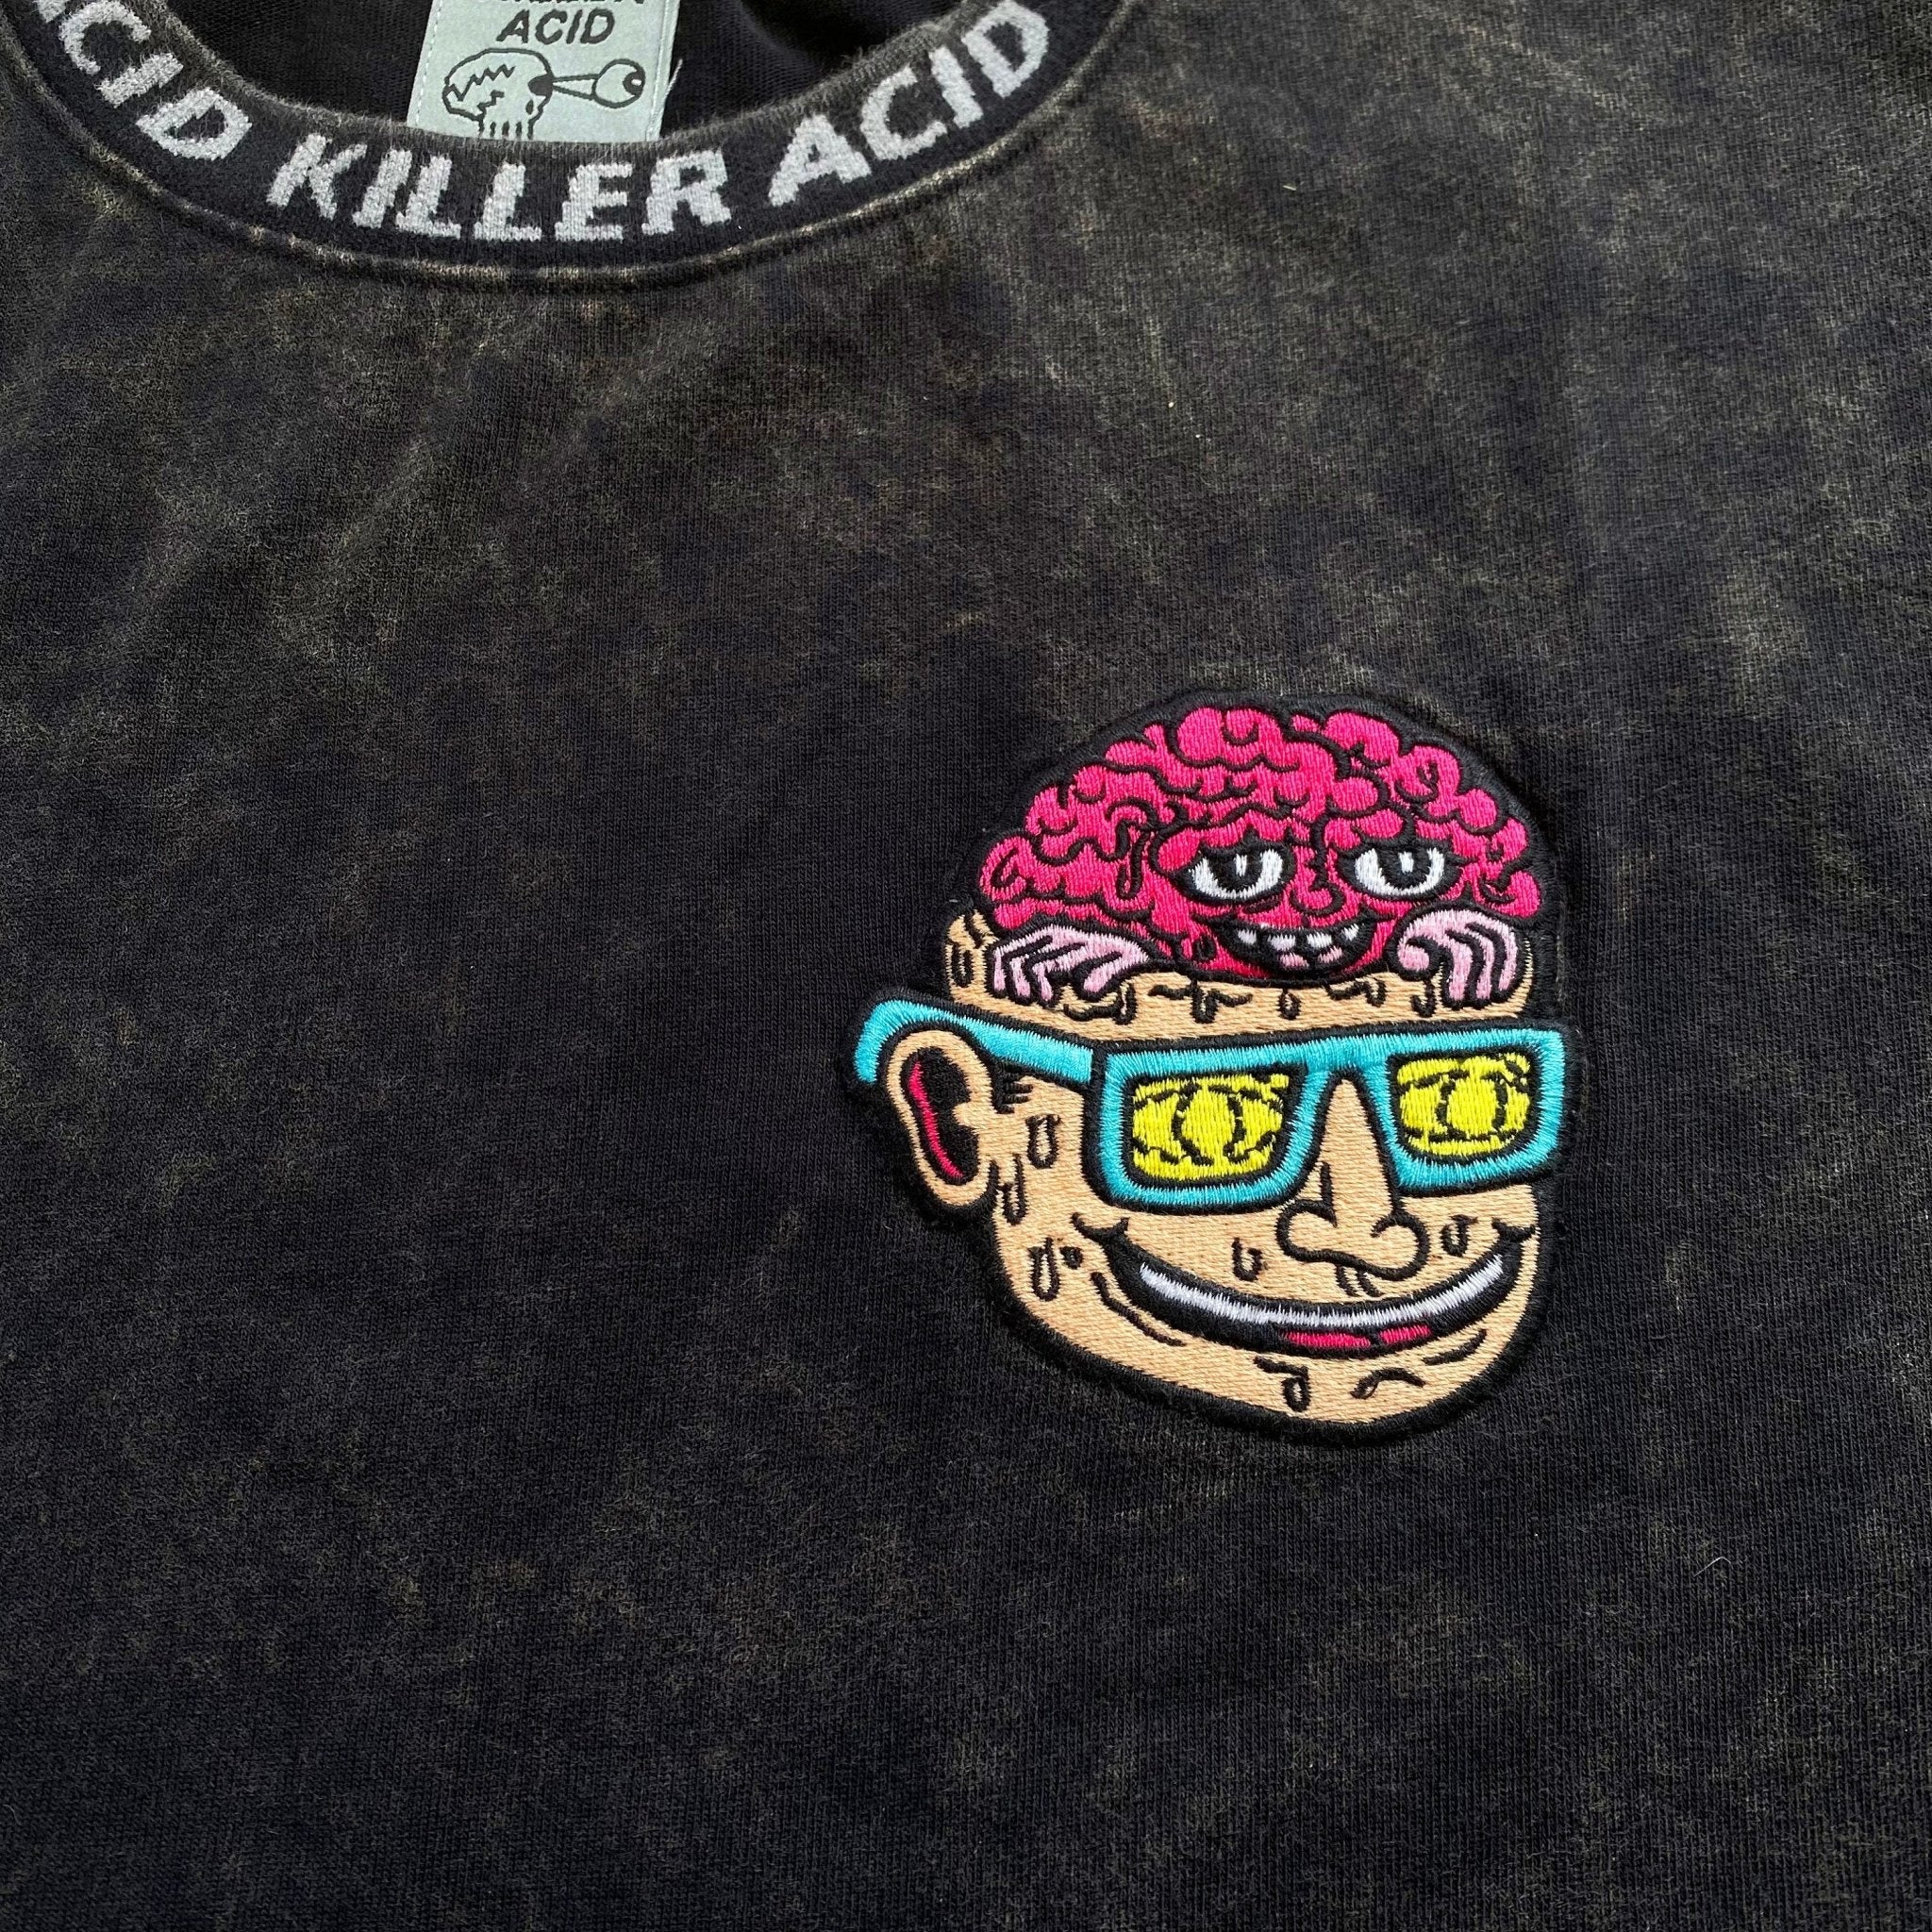 Flip Your Lid Black Mineral Wash T-Shirt – Killer Acid